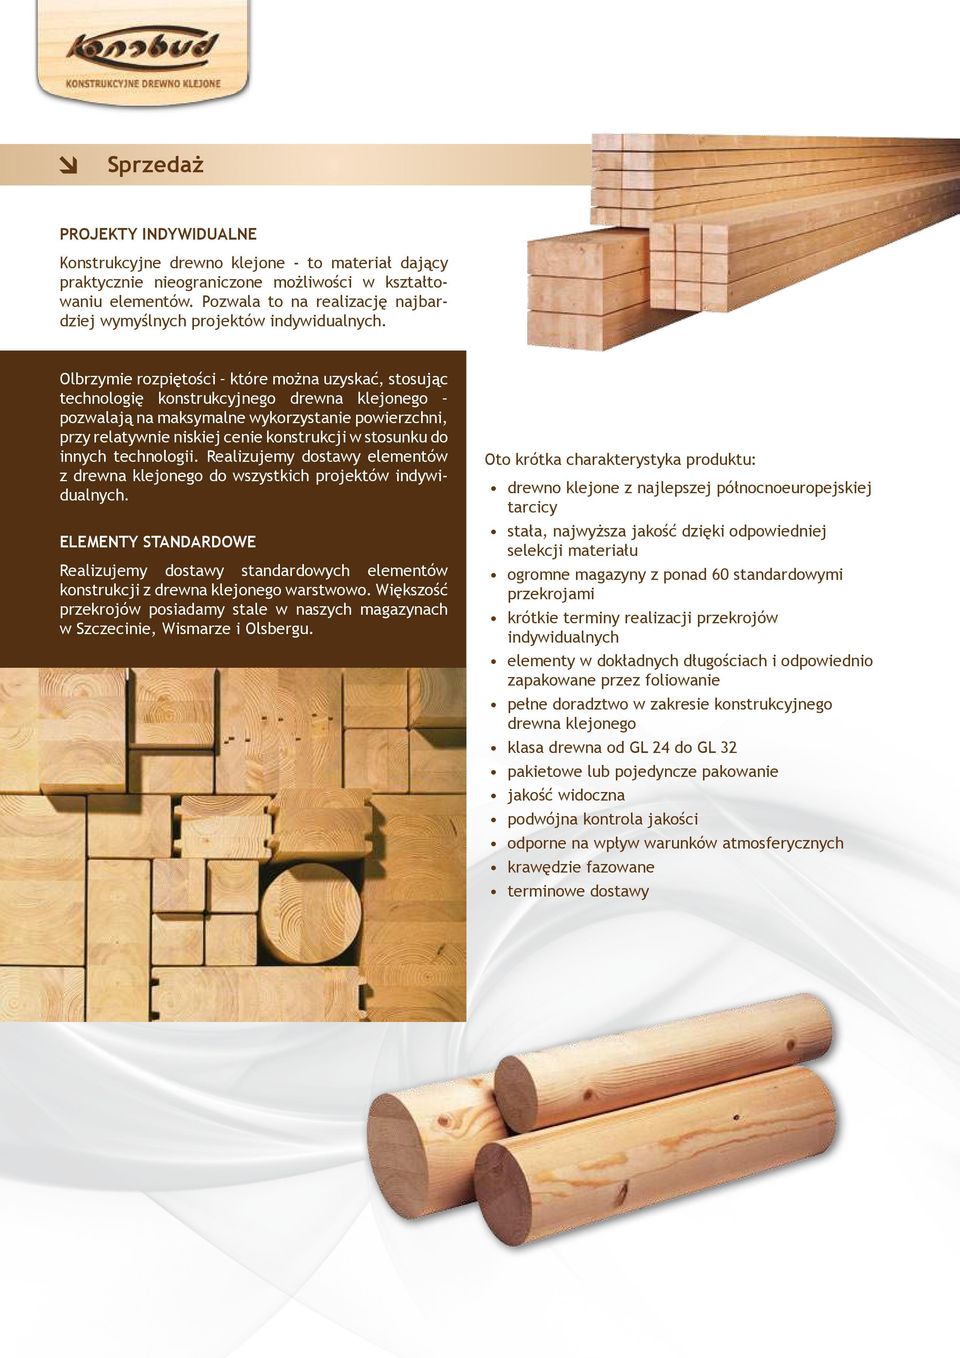 Olbrzymie rozpiętości które można uzyskać, stosując technologię konstrukcyjnego drewna klejonego pozwalają na maksymalne wykorzystanie powierzchni, przy relatywnie niskiej cenie konstrukcji w